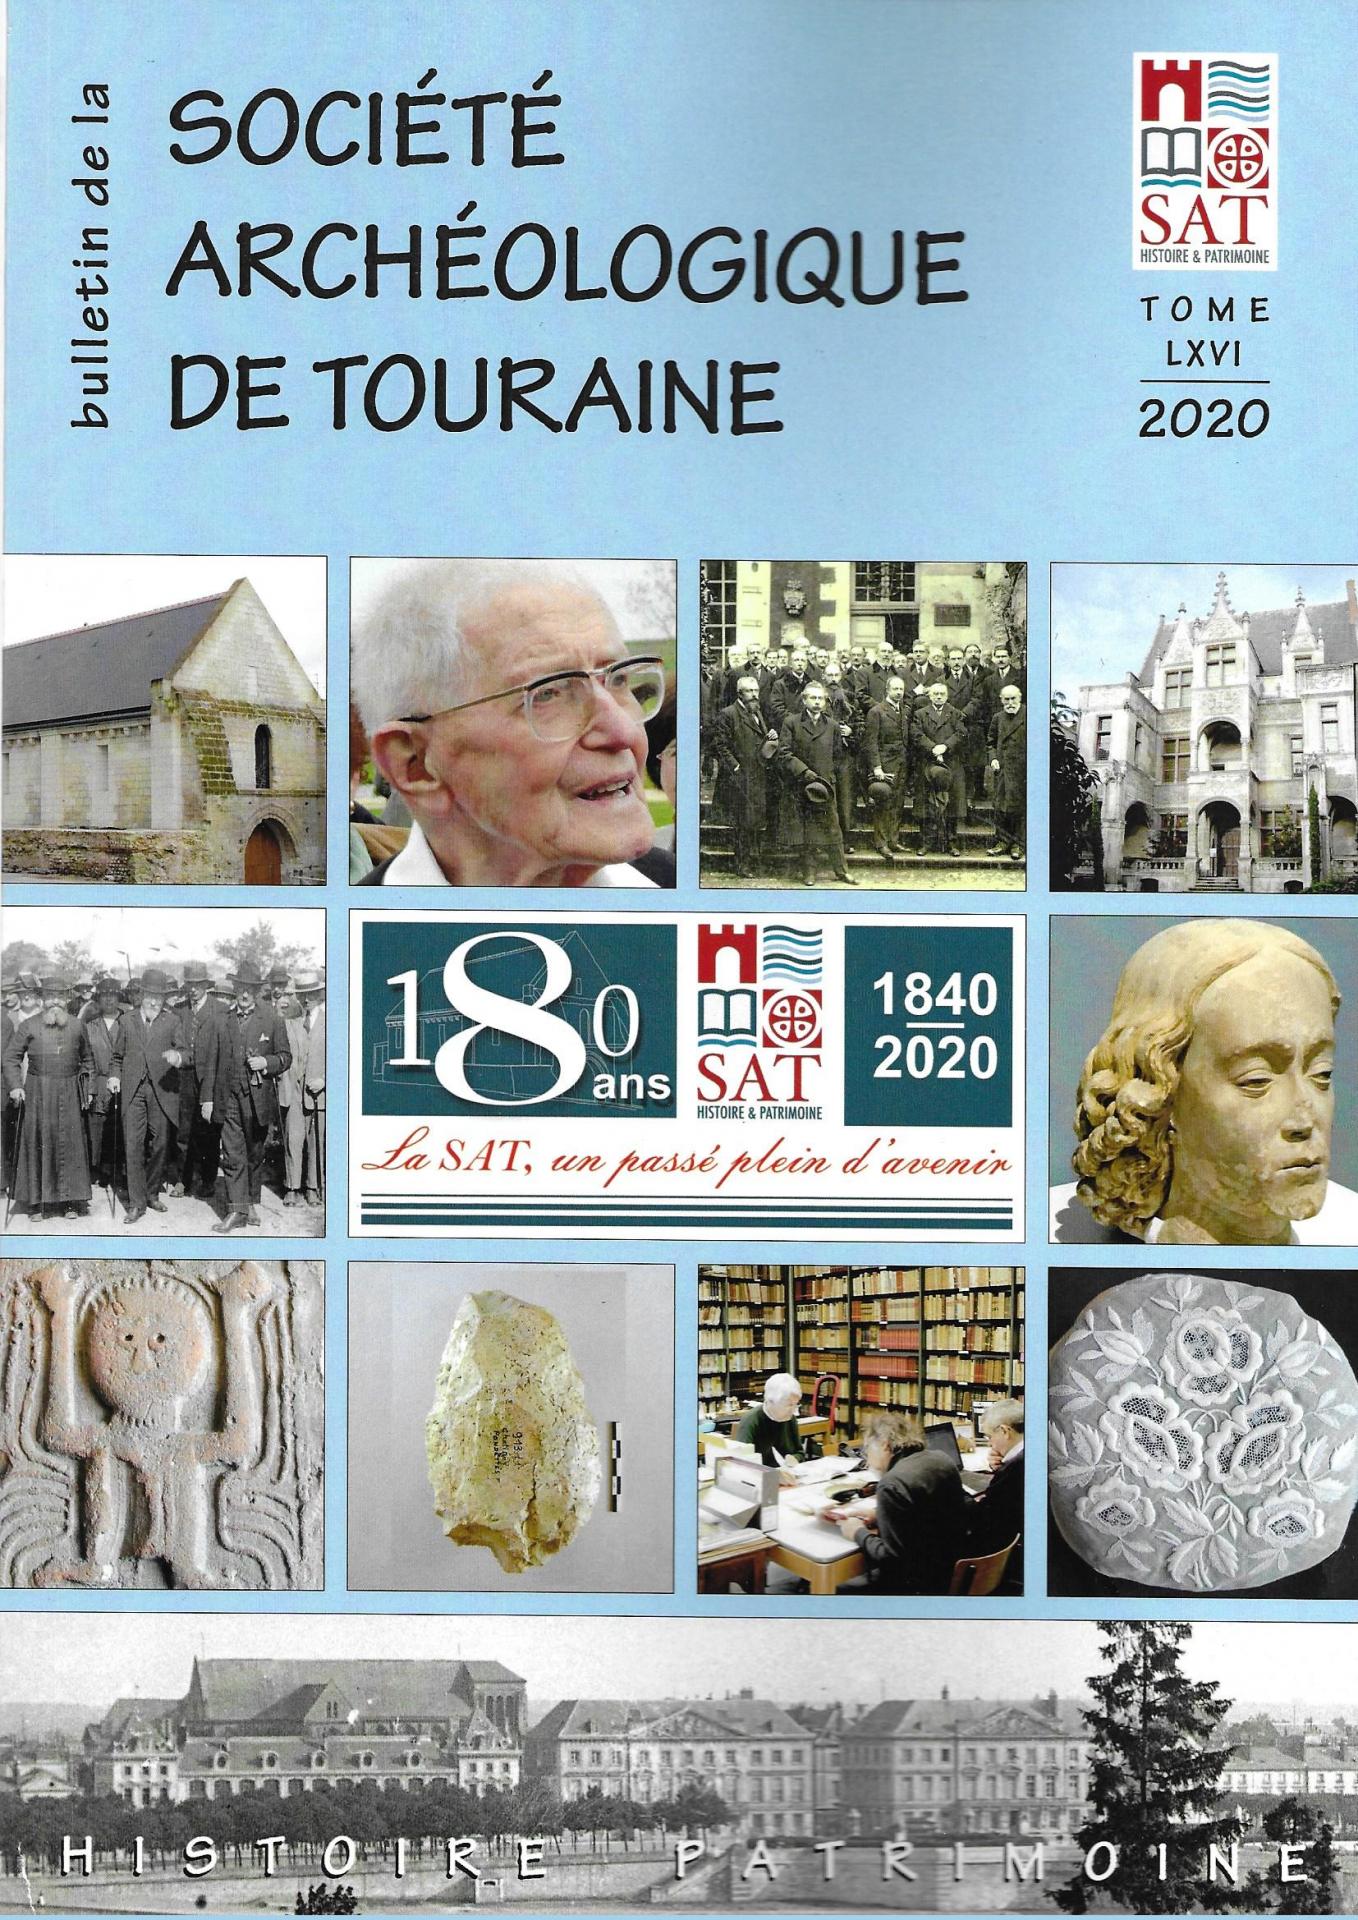 Bulletin de la Société archéologique de Touraine, t. LXVI, 2020, printemps 2021